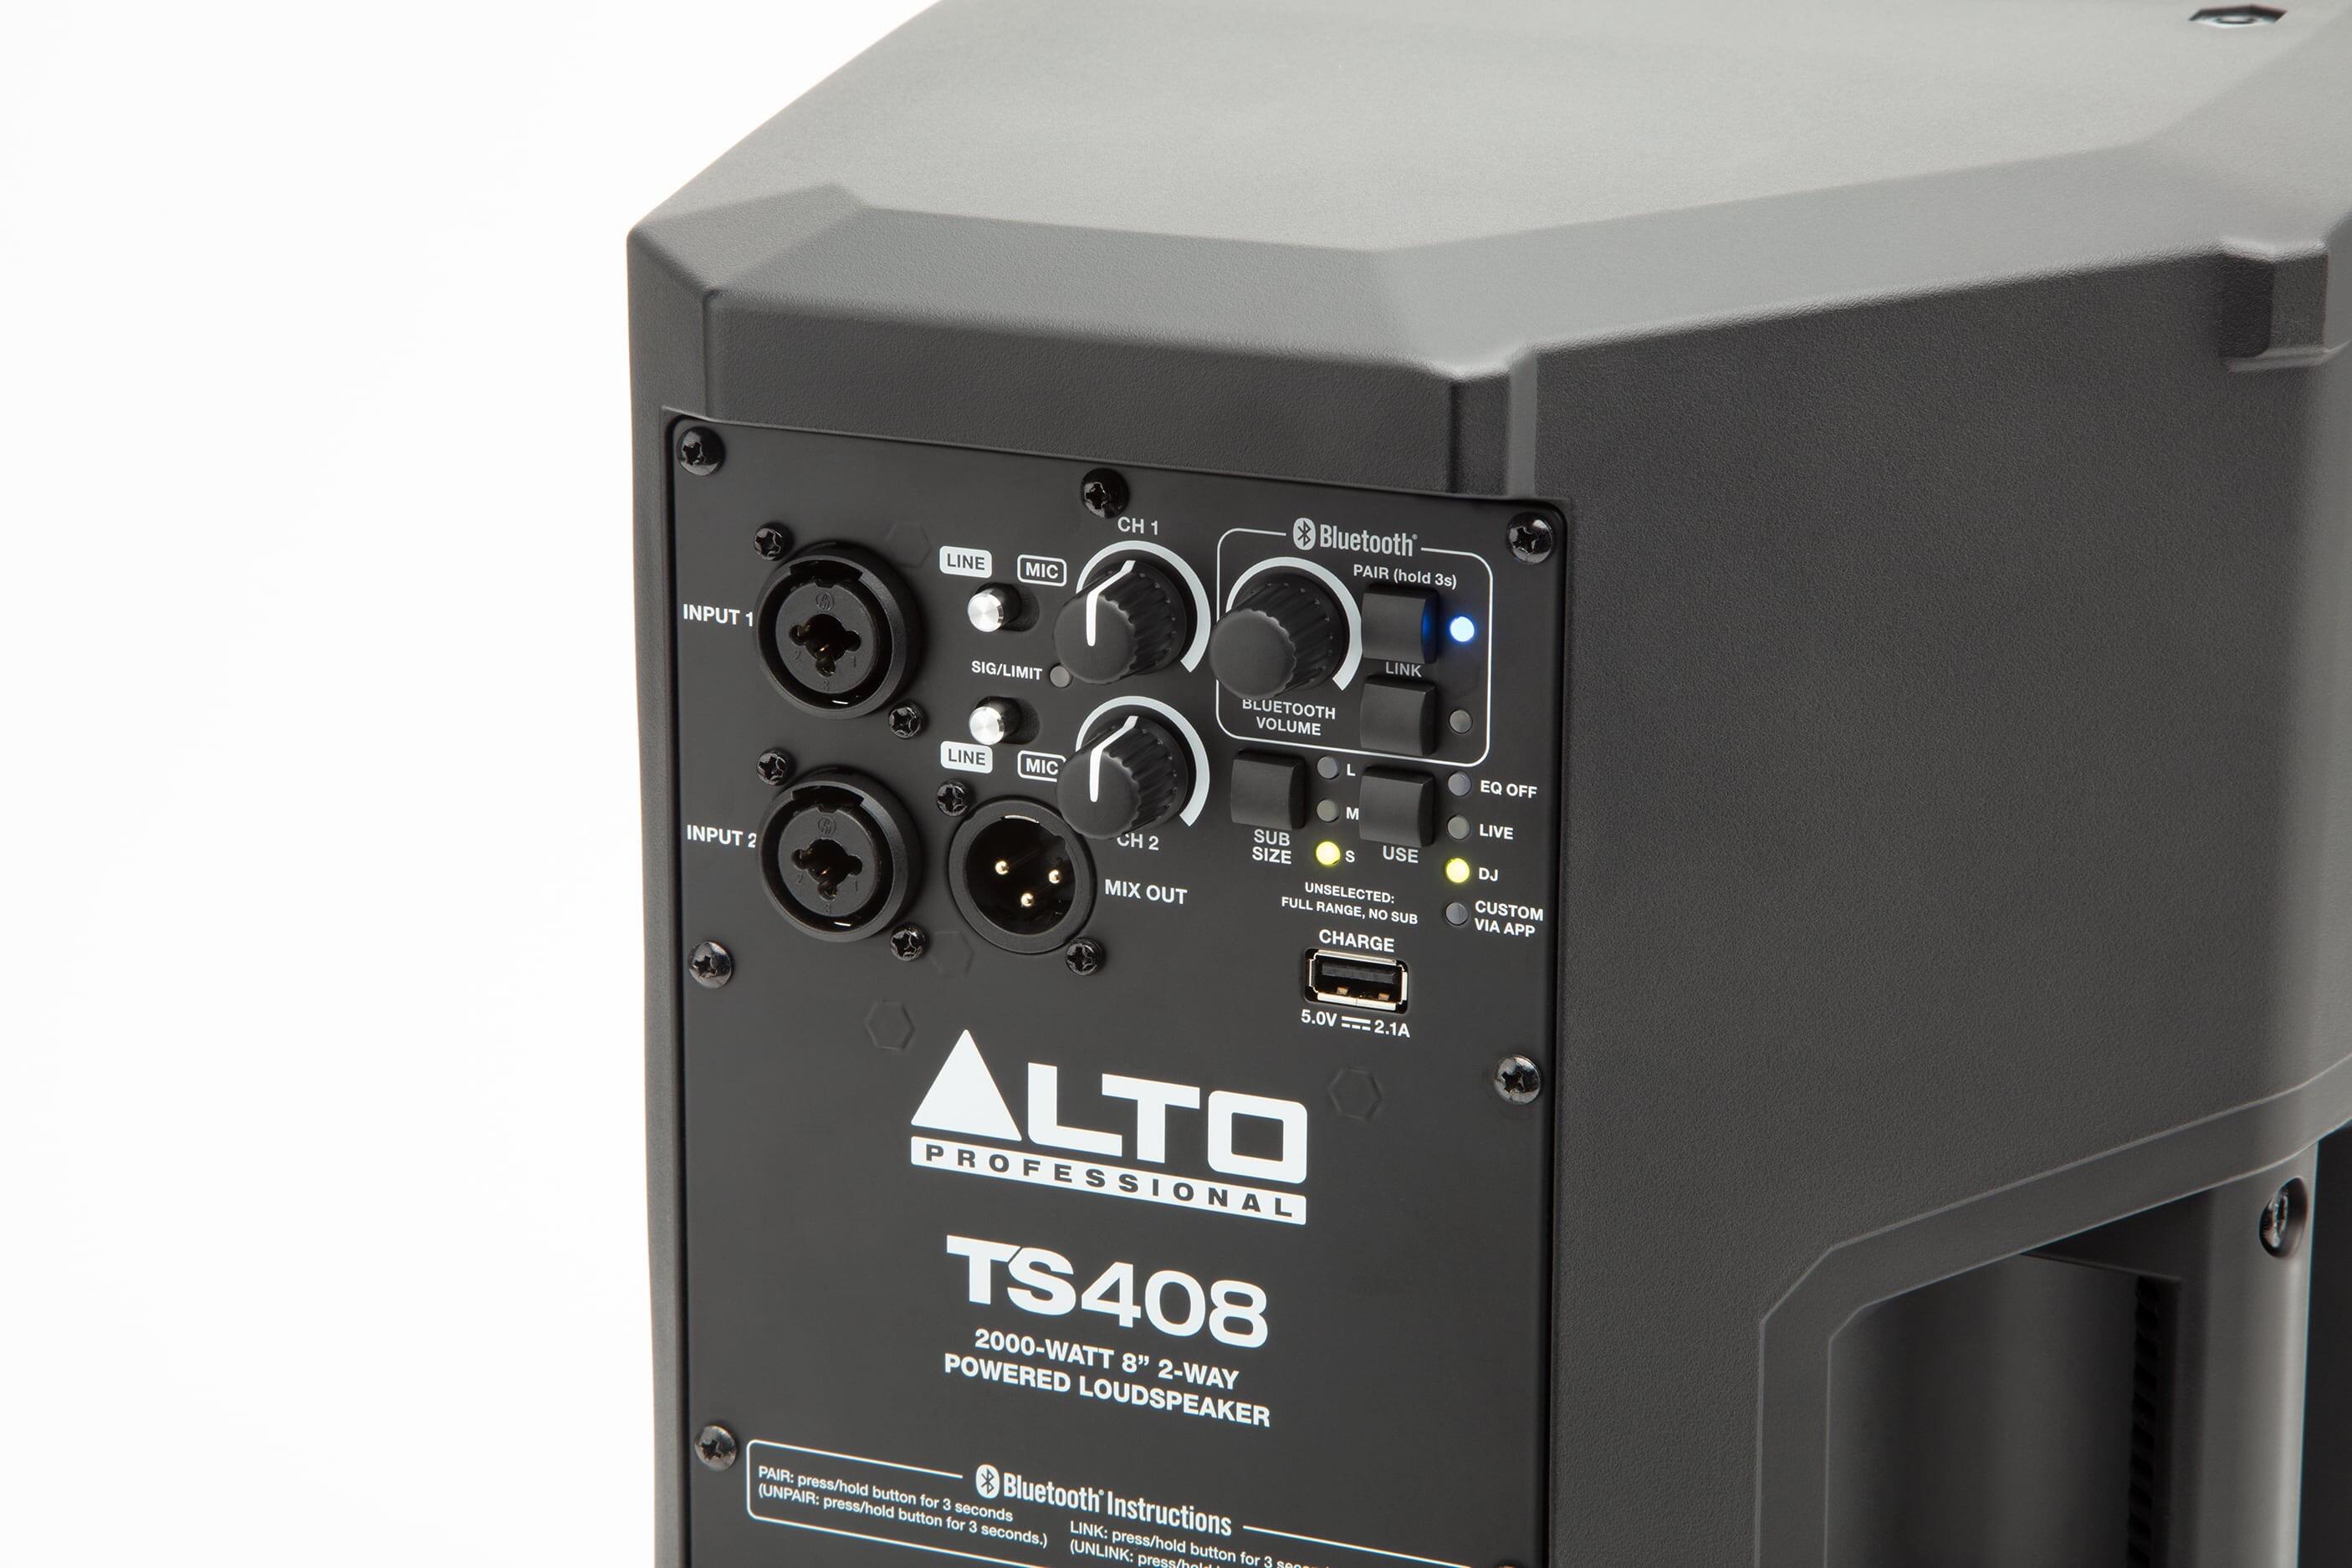 Alto Professional TS408 inputs